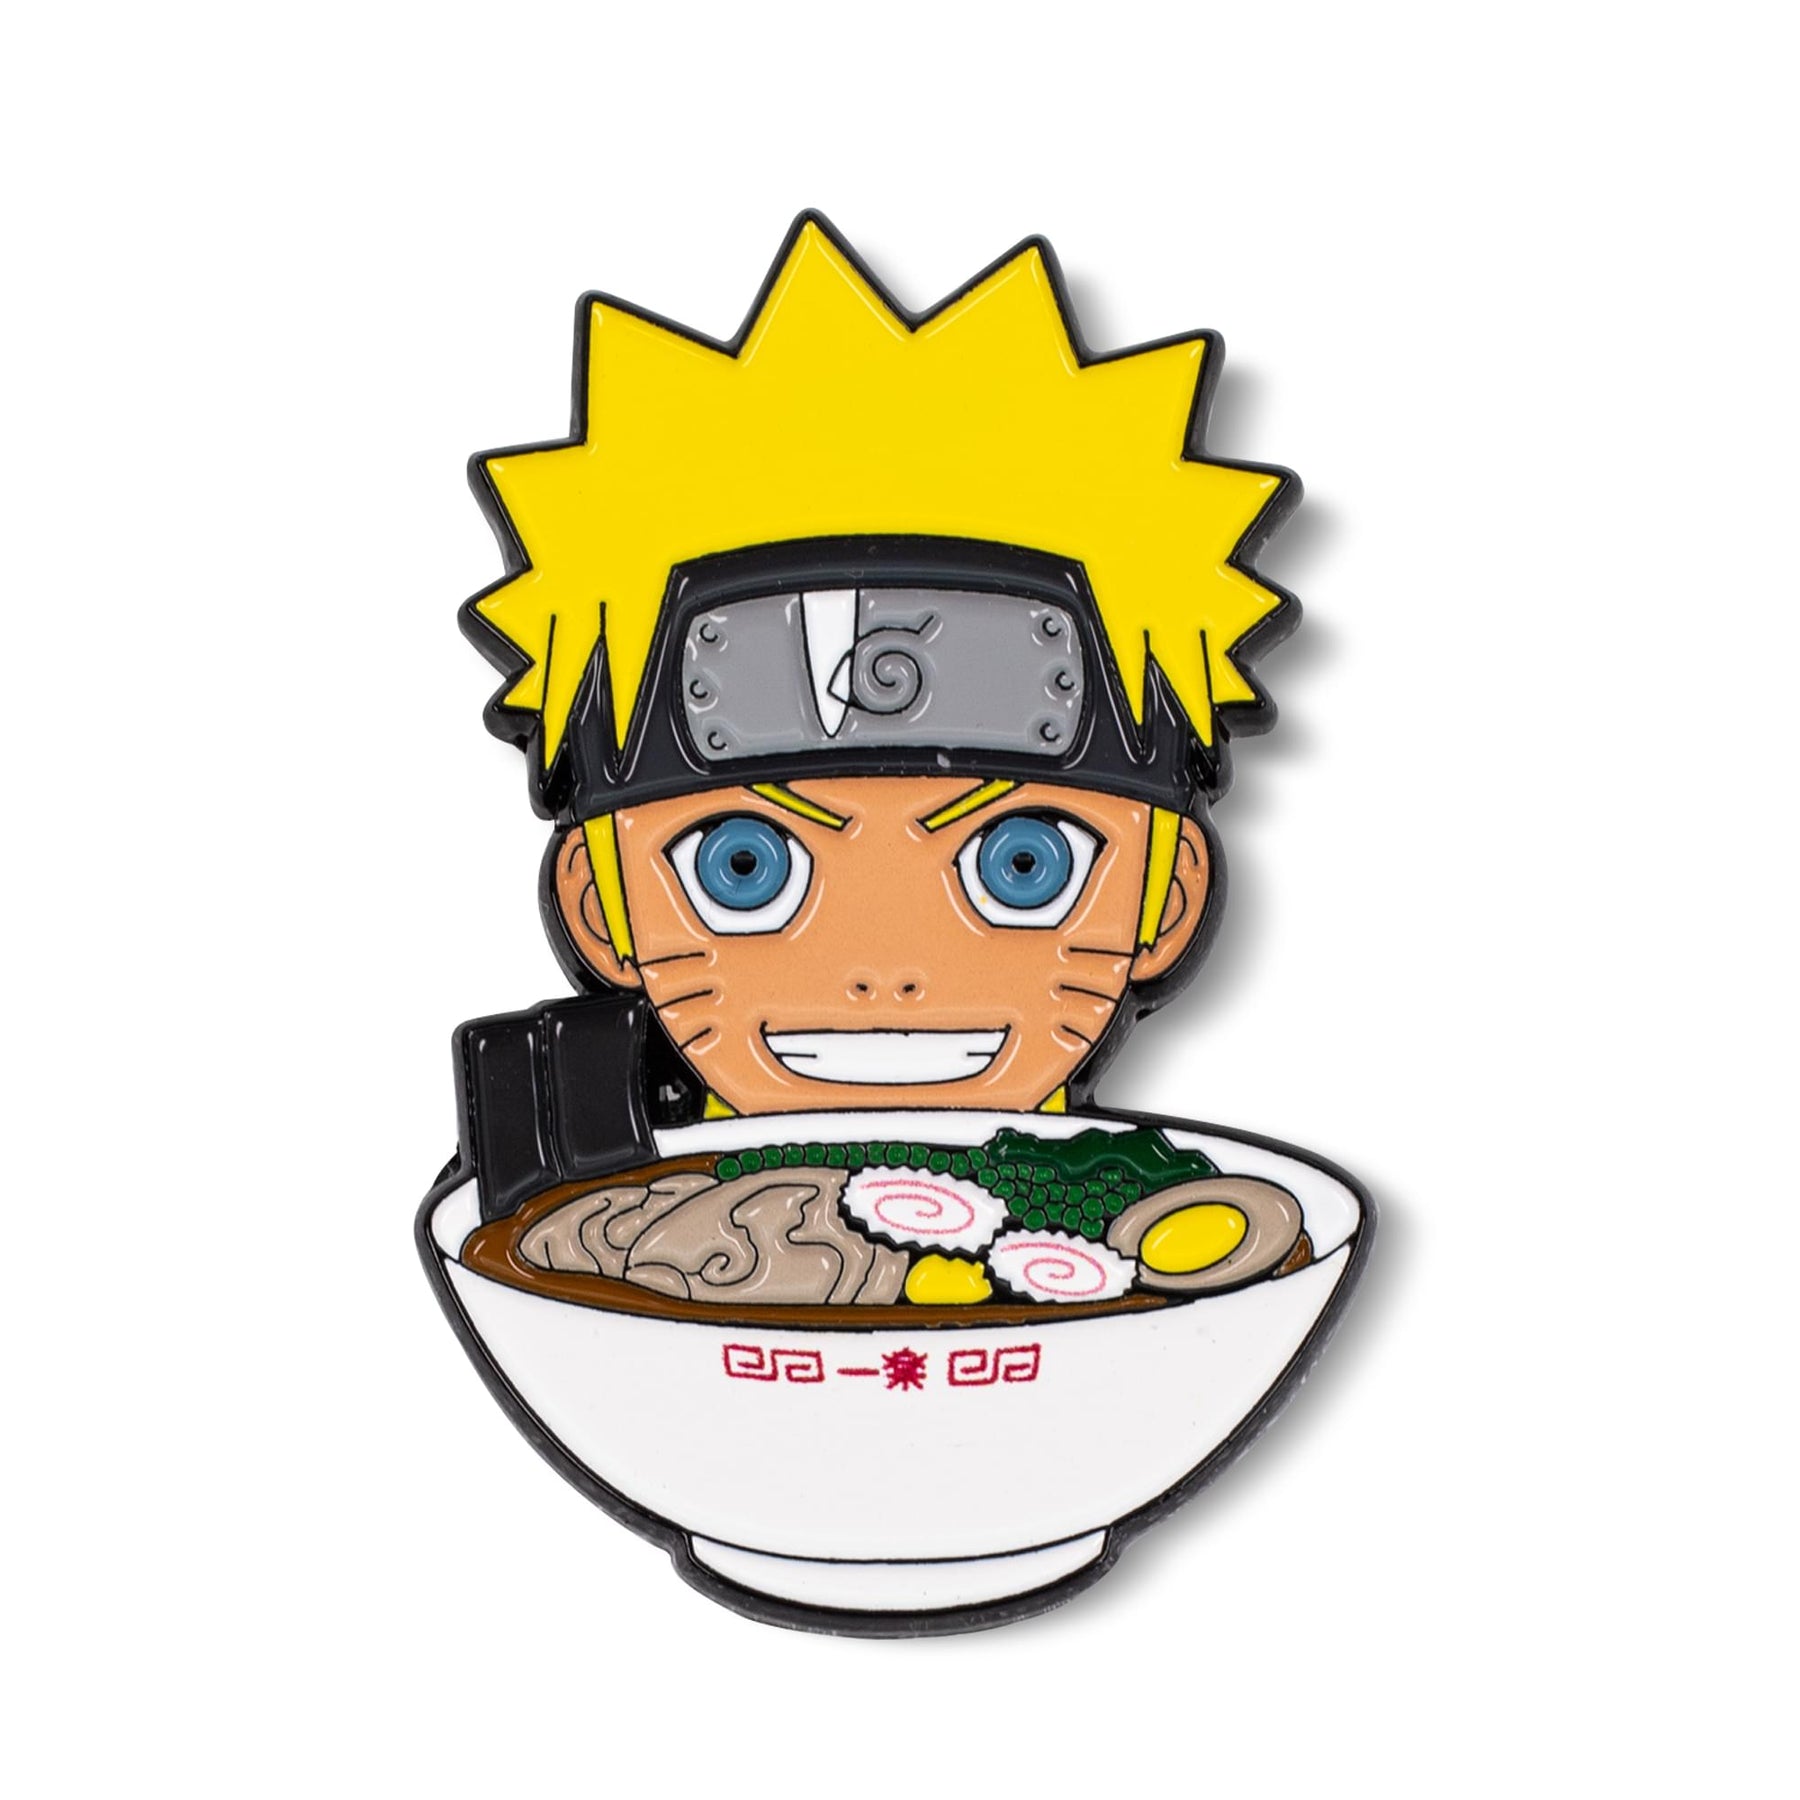 Naruto: Shippuden Ichiraku Ramen Limited Edition Enamel Pin | Toynk Exclusive